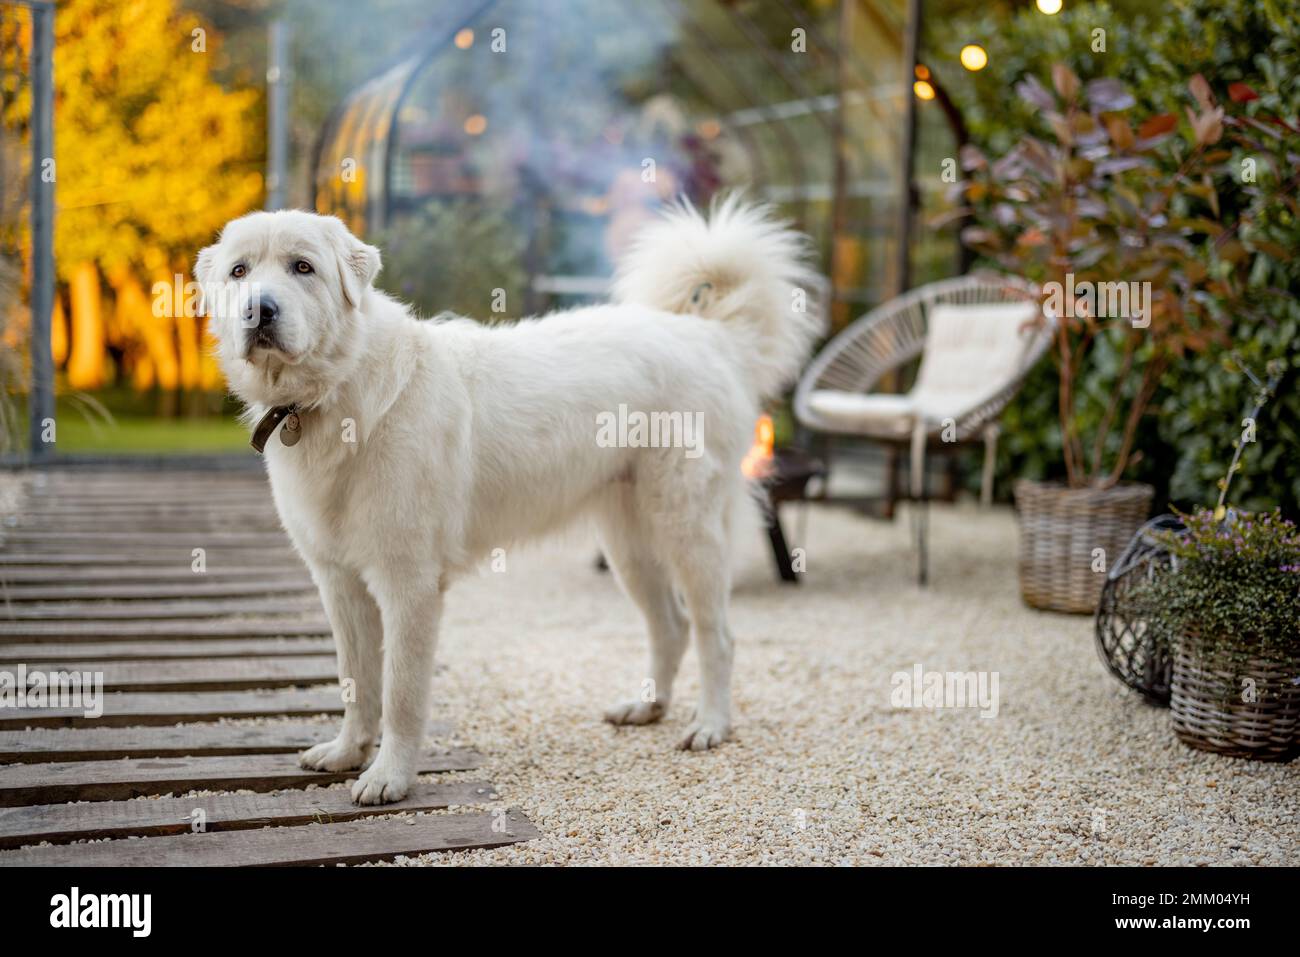 Carino cane bianco a cortile bello e accogliente con picnic fuoco dietro. Razza di cane pastore della maremma italiana Foto Stock